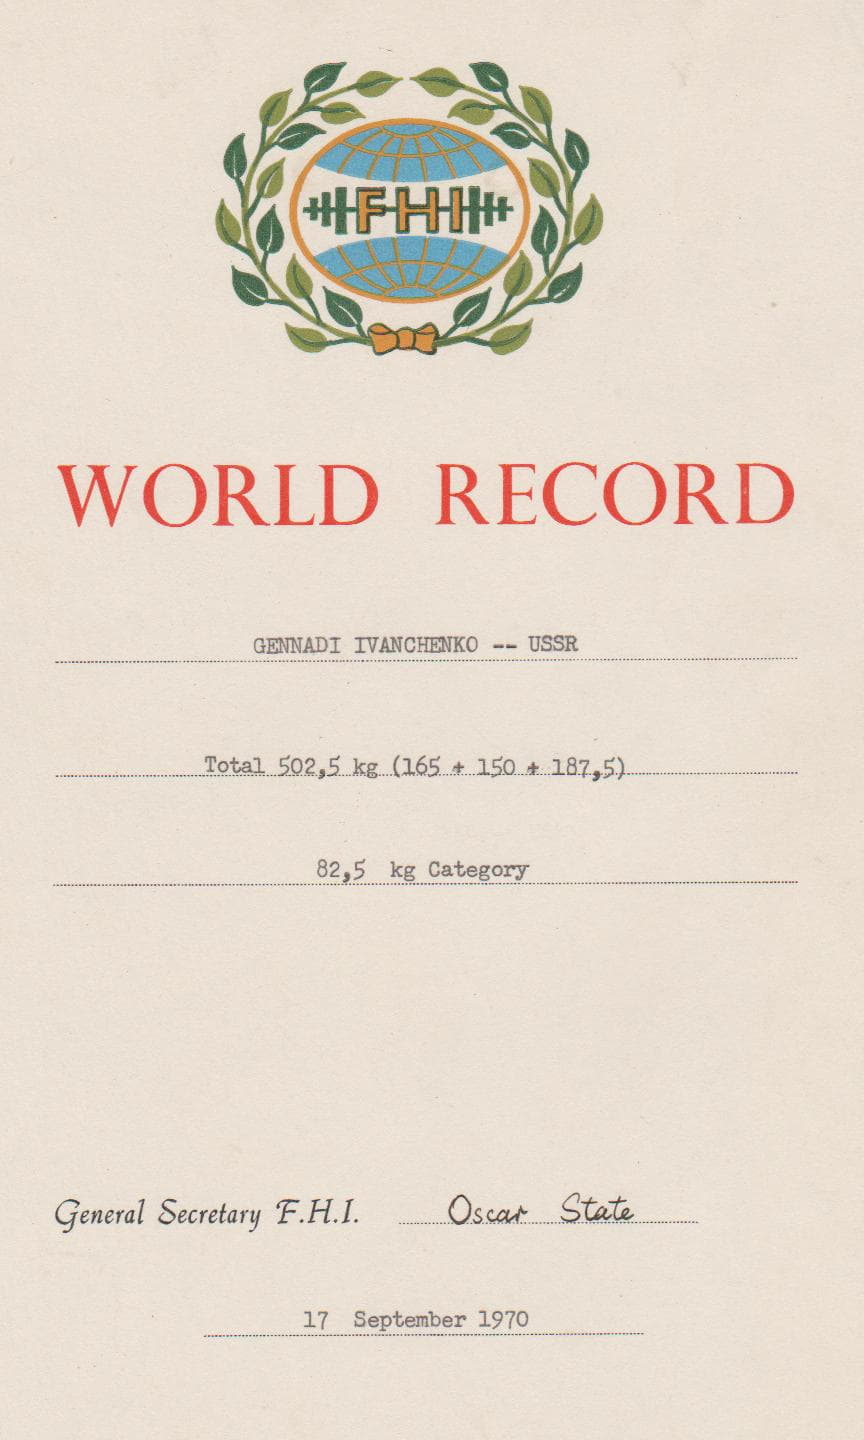 Почетная грамота Иванченко Г.И. о мировом рекорде весовой категории 82.5 кг. 17.09.1970 г.